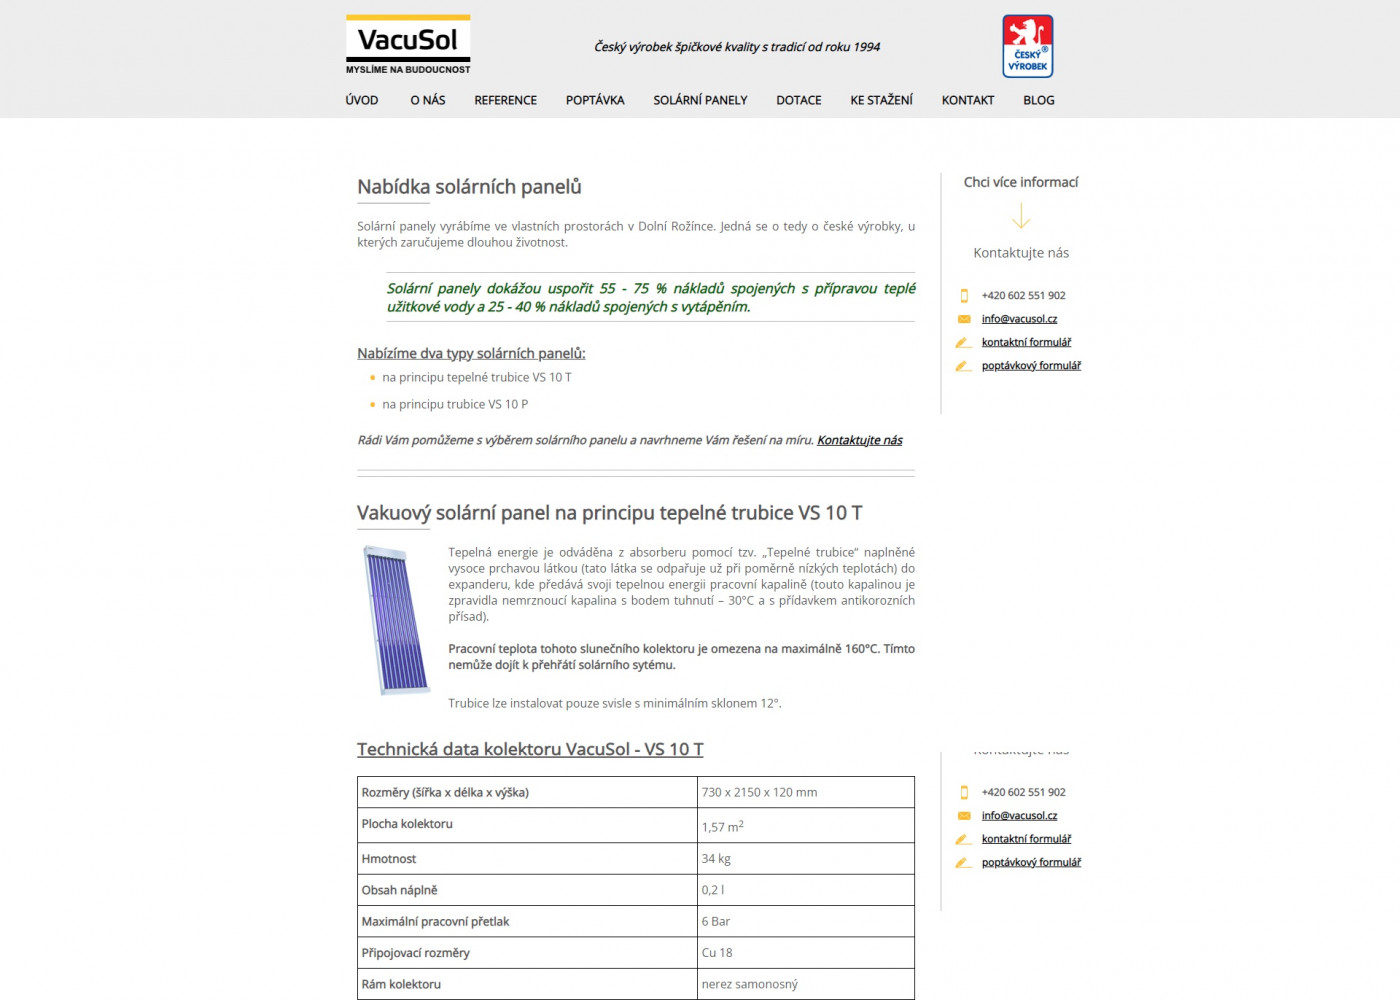 Tvorba nového webu pro VacuSol ve svérázném designu - Porovnání, stará verze #1